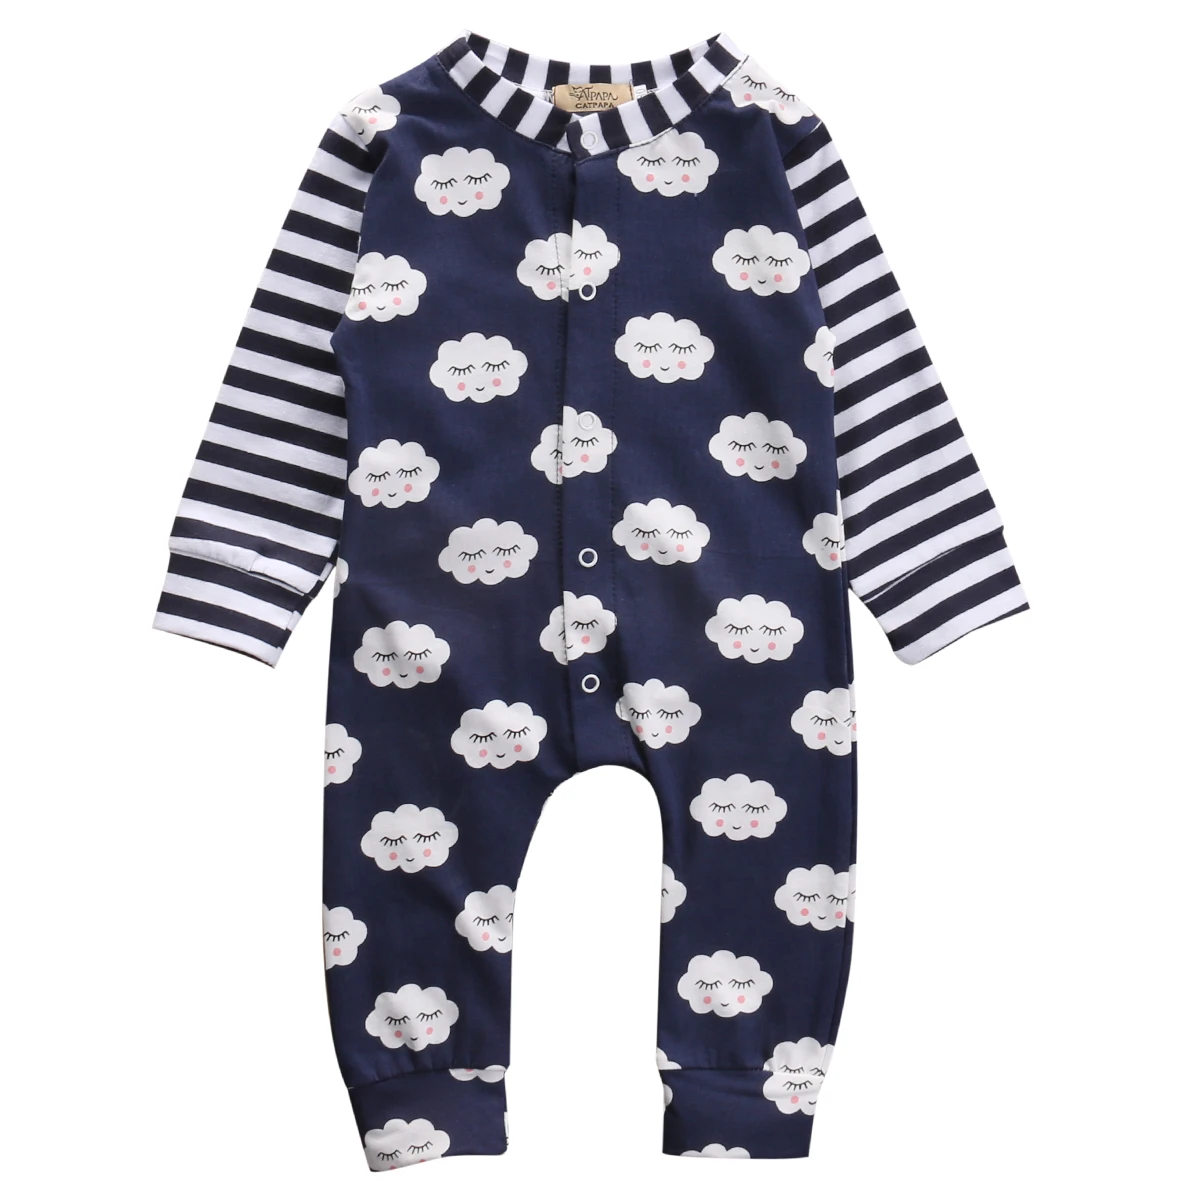 Милый детский Модный комбинезон унисекс для новорожденных мальчиков и девочек с застенчивым облаком; костюм для подвижных игр; одежда в полоску - Цвет: Синий